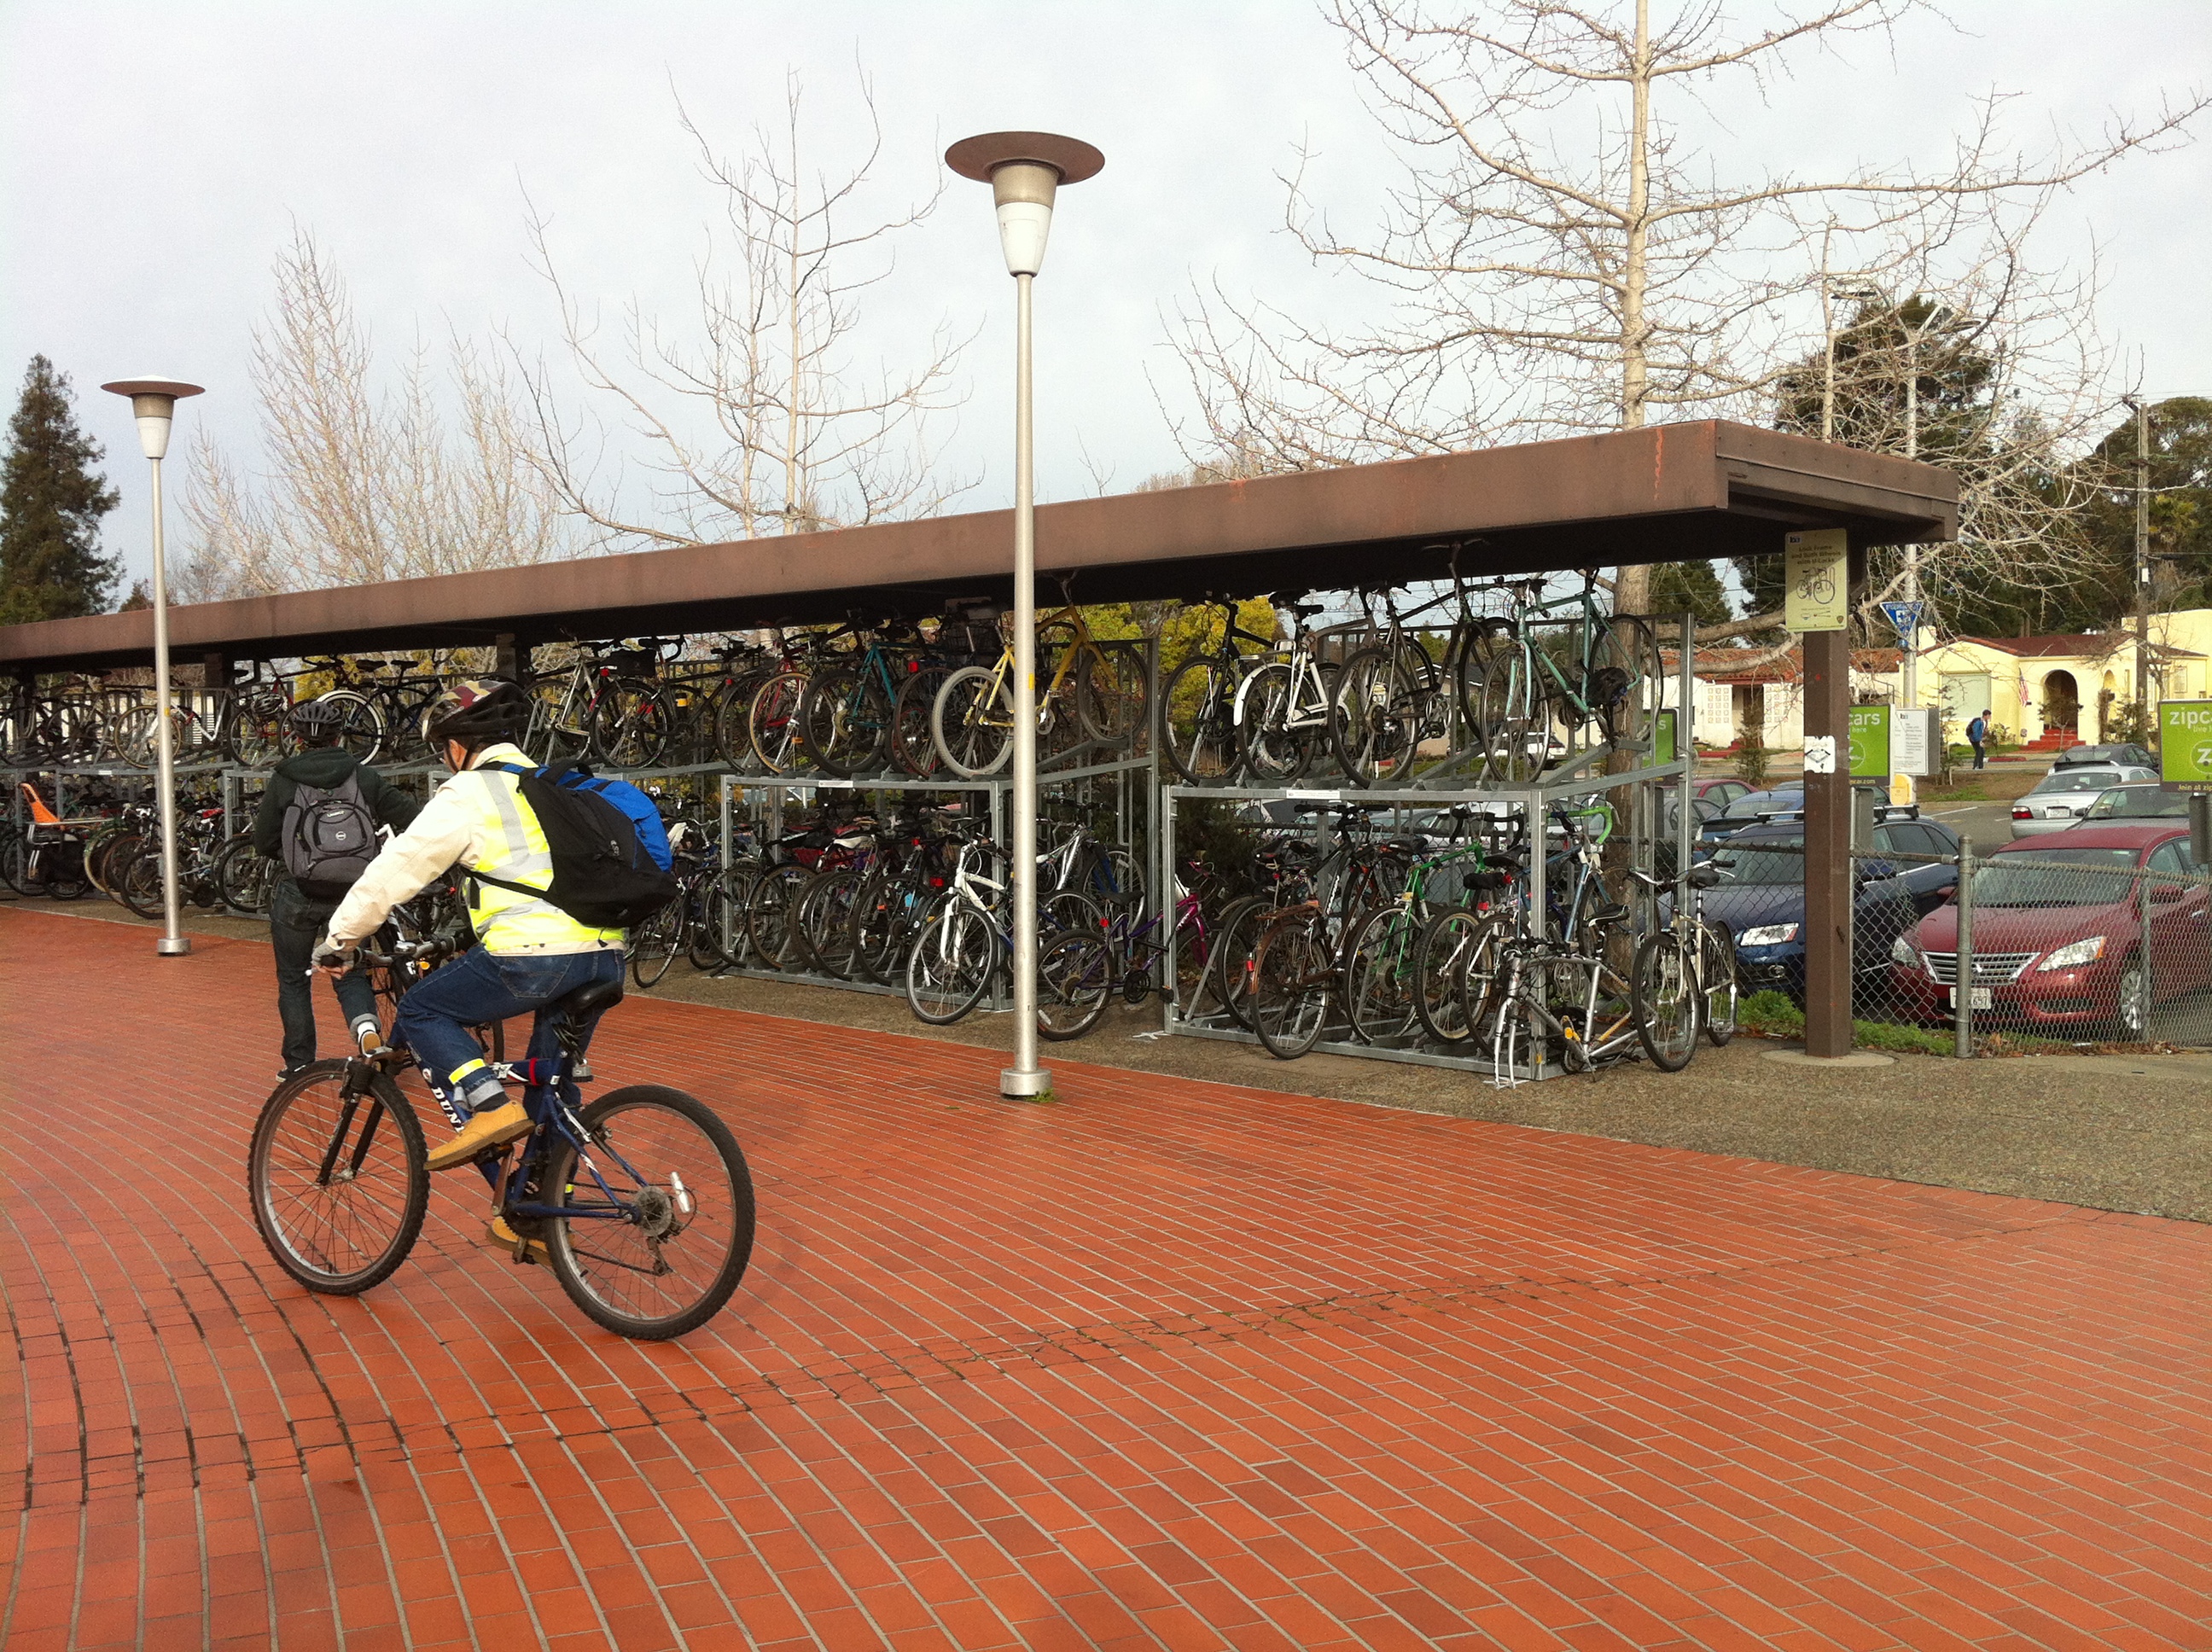 Image of bike racks at North Berkeley